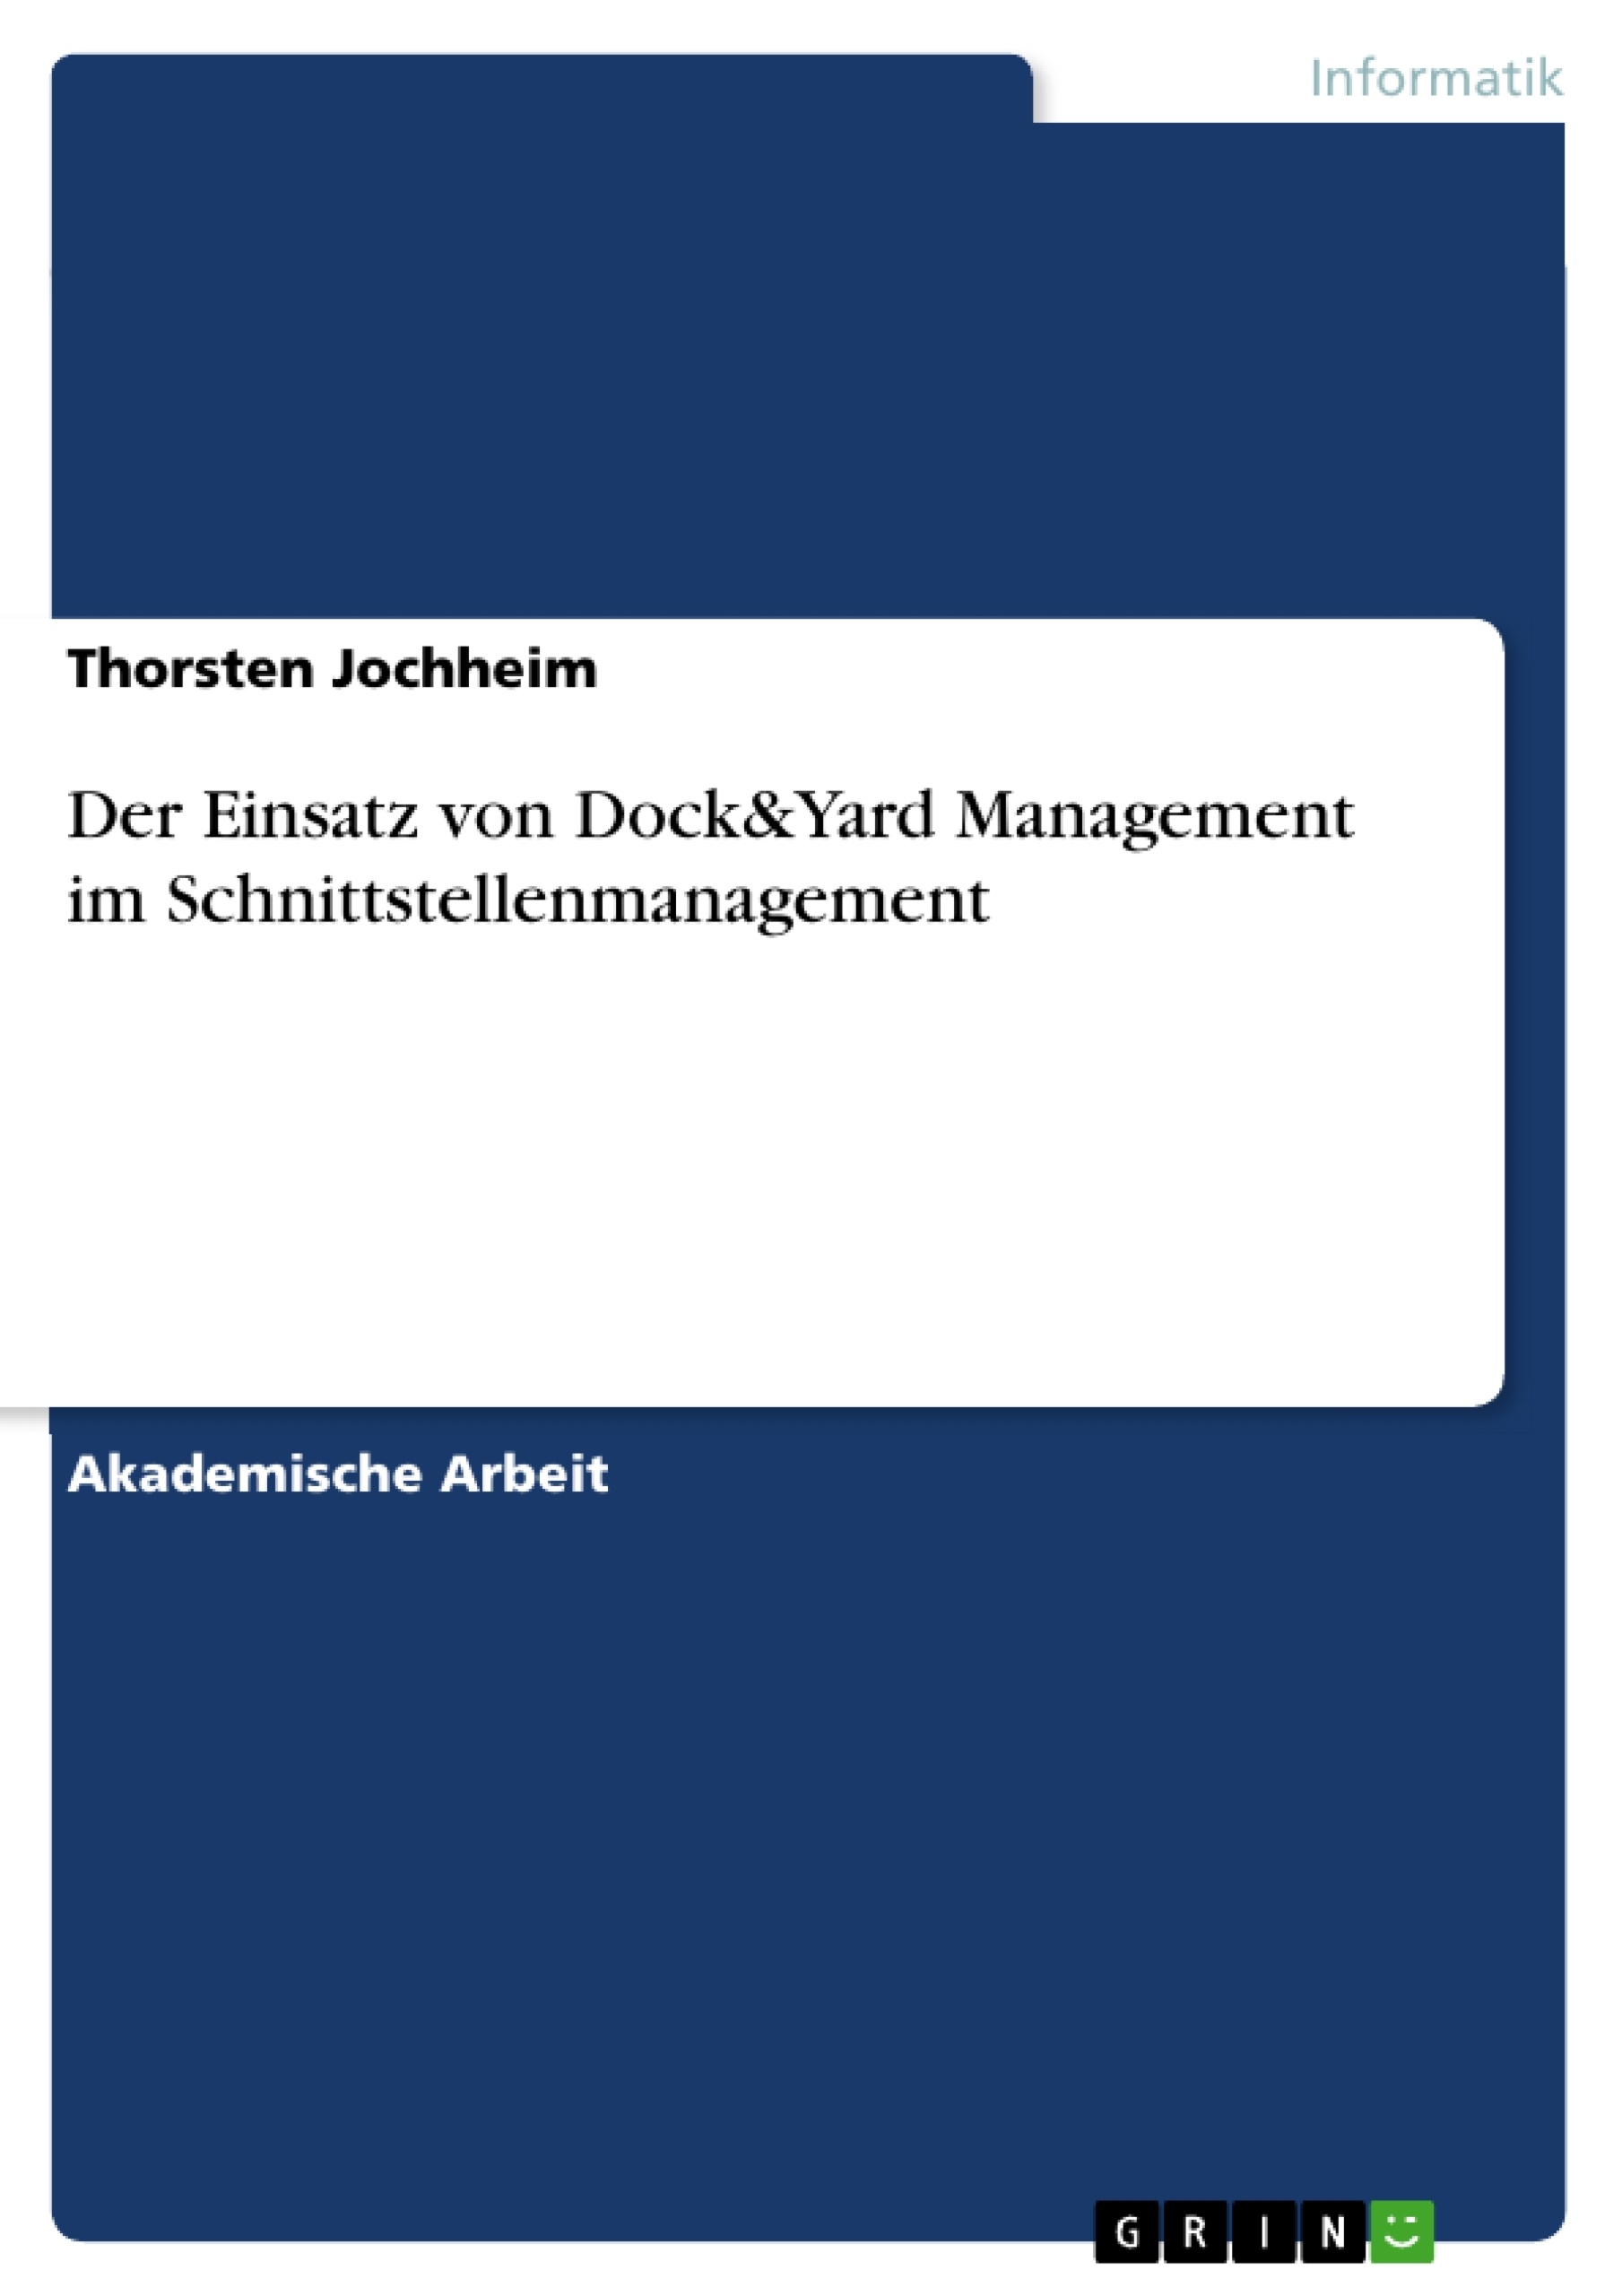 Title: Der Einsatz von Dock&Yard Management im Schnittstellenmanagement